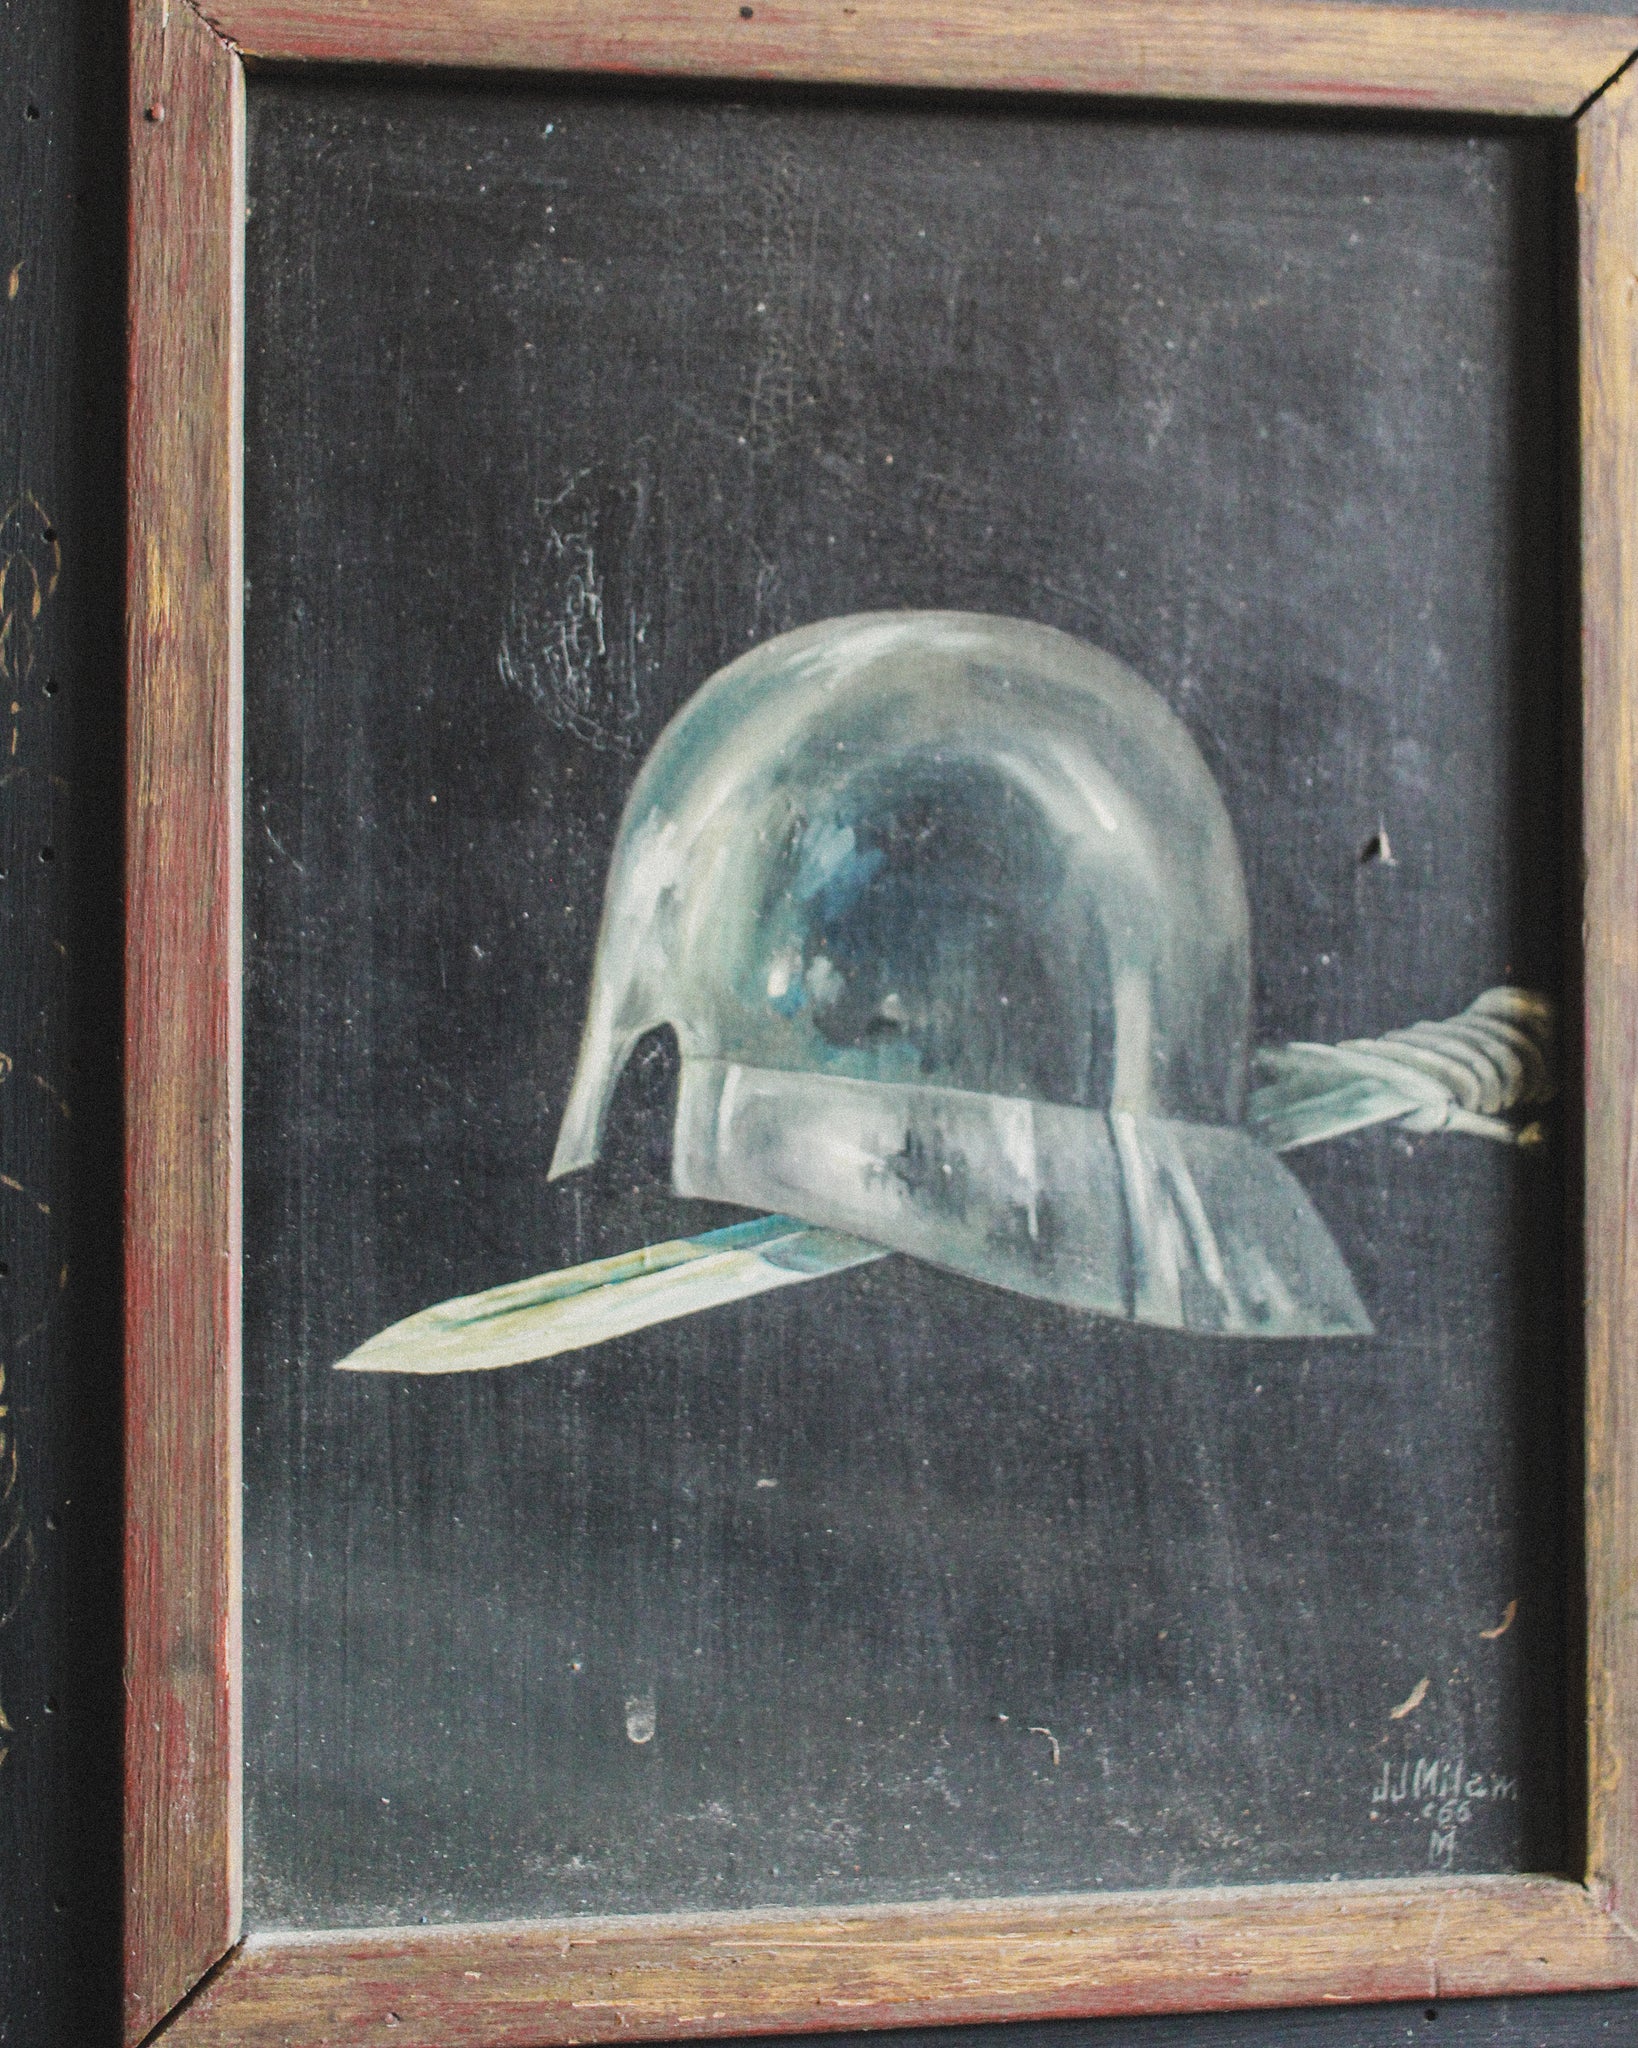 Helmet and Sword, J.J. Milam (1932-1990), Oil on Panel